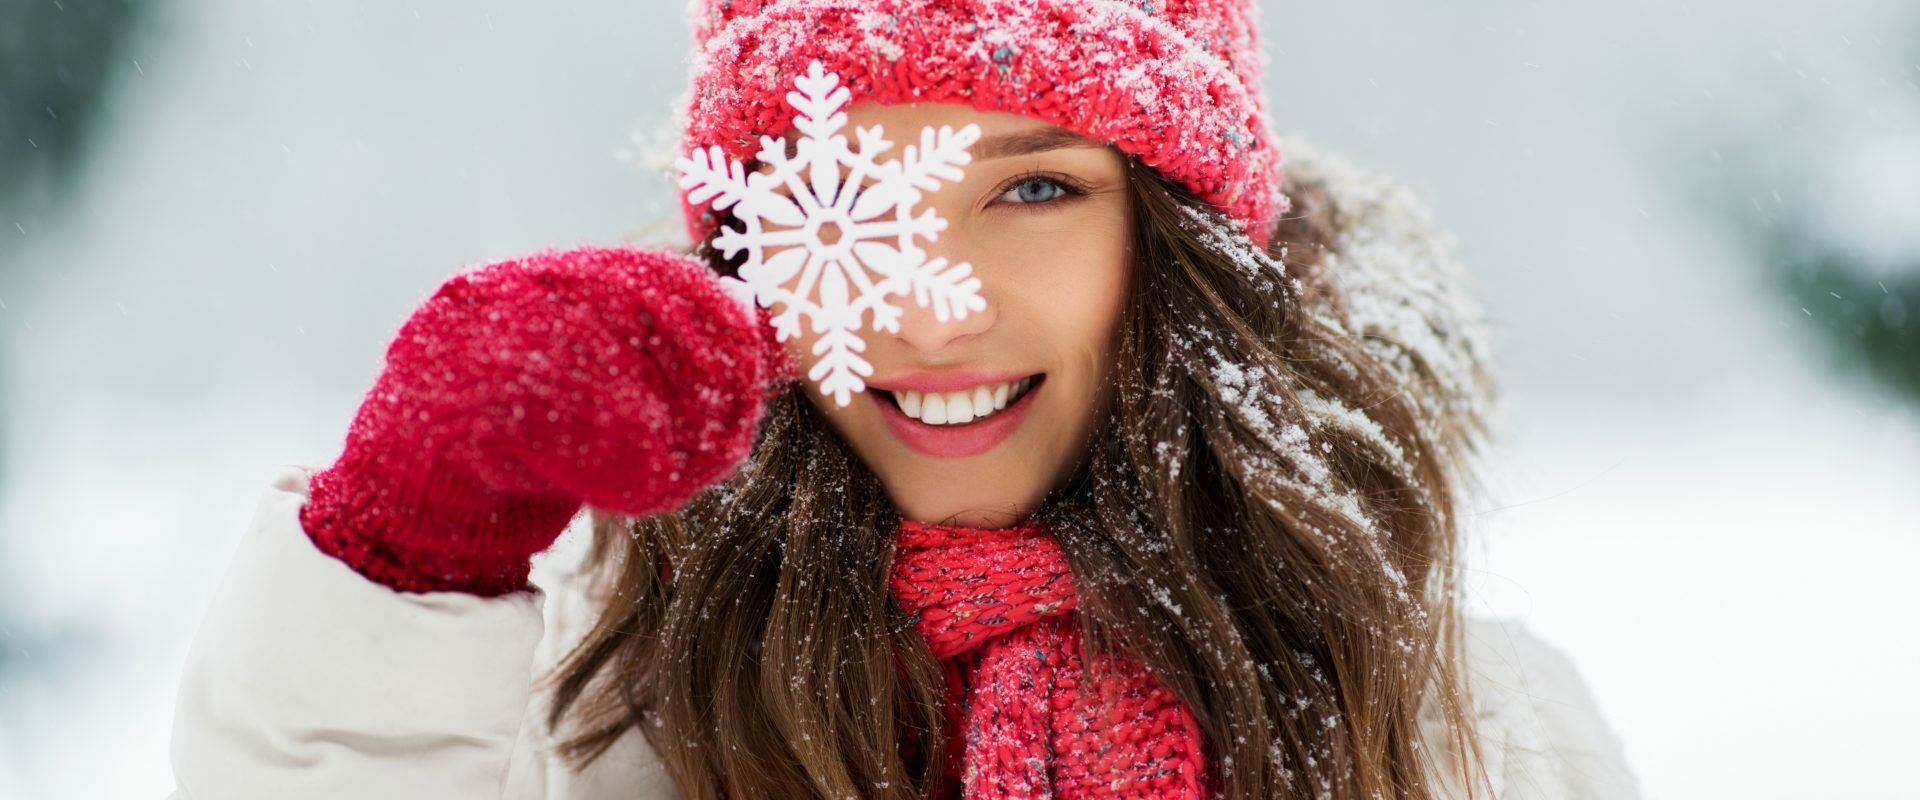 Jak wzmocnić odporność w 7 krokach? Kobieta w kurtce puchowej, czerwonej czapce i szaliku w zimowej scenerii uśmiecha się do aparatu, przykładając do oka ozdobny płatek śniegu.